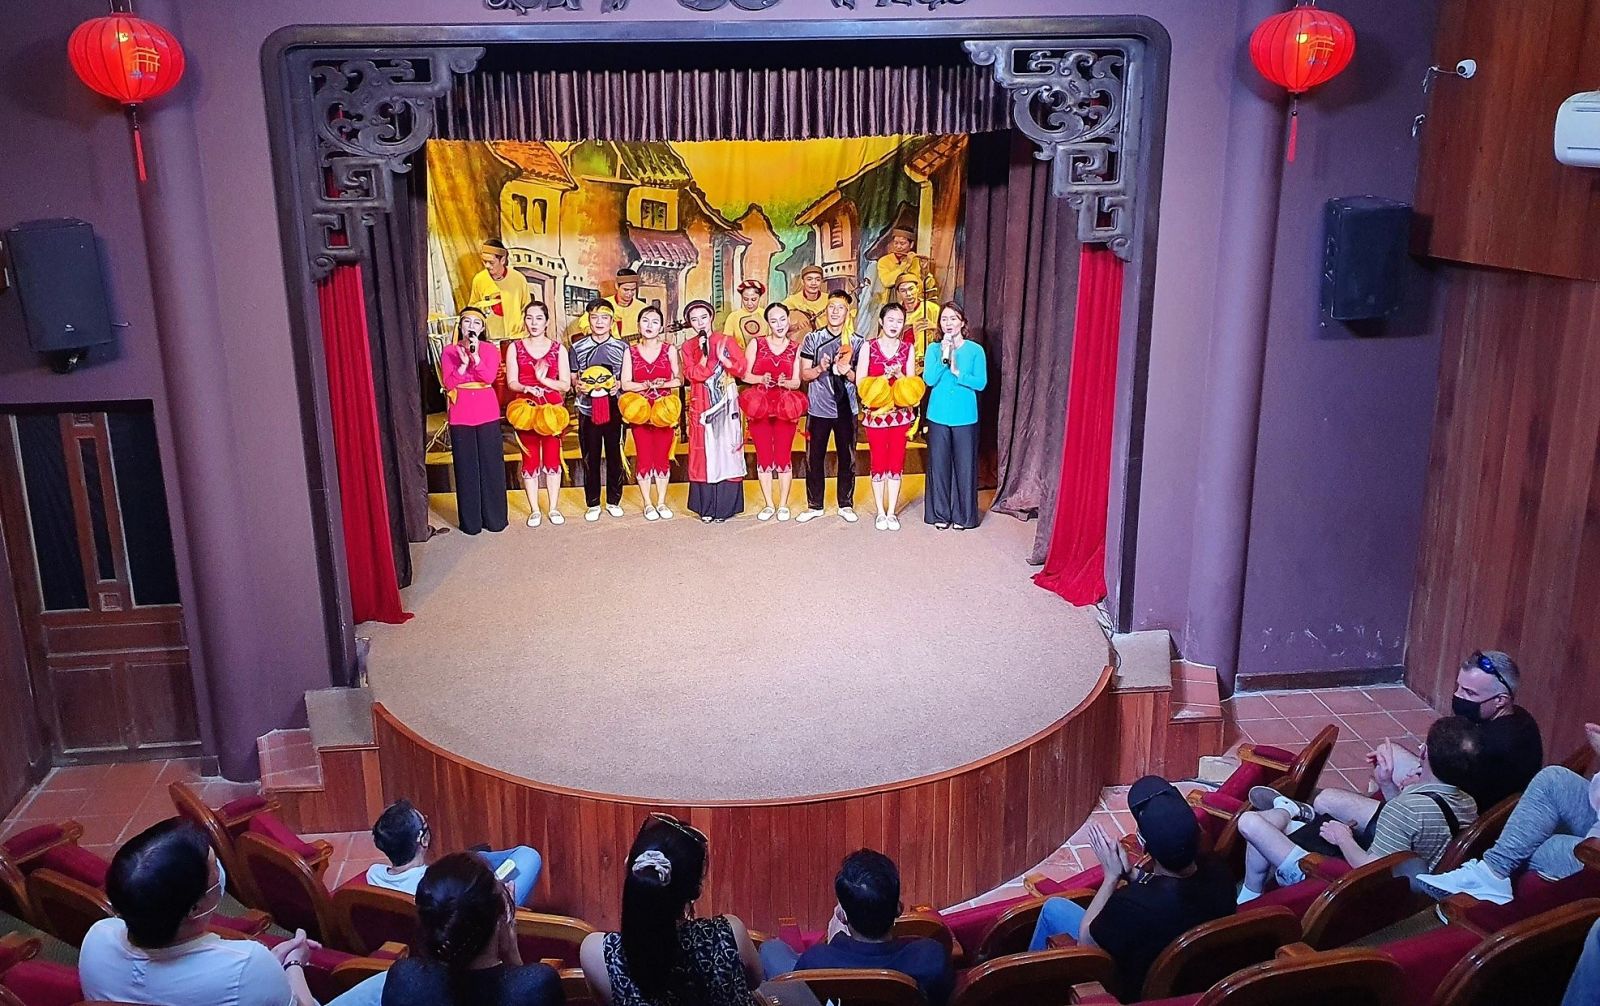 Tại sân khấu vòng cung Chùa Cầu, Sở Văn hóa - Thể thao và Du lịch tỉnh Quảng Nam phối hợp với chính quyền thành phố Hội An tổ chức buổi đón tiếp các vị khách quốc tế đầu tiên đặt chân đến tham quan đô thị cổ sau 2 năm 